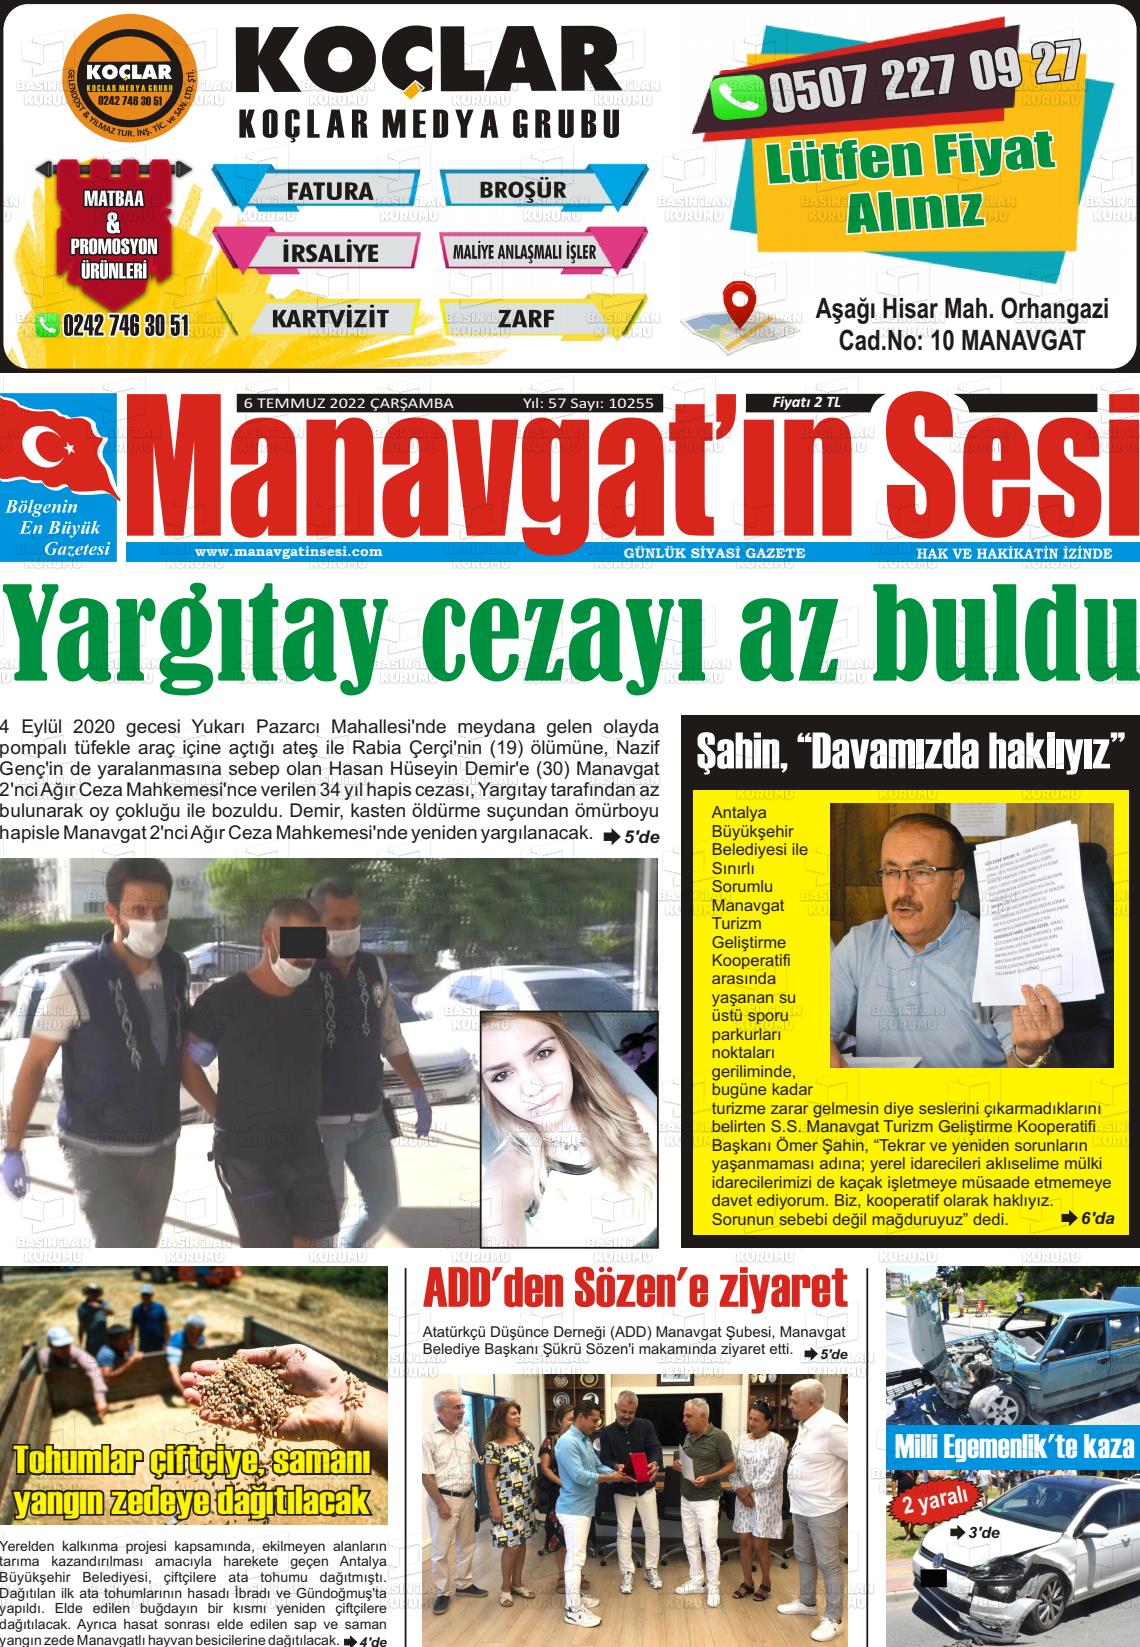 06 Temmuz 2022 Manavgat'ın Sesi Gazete Manşeti